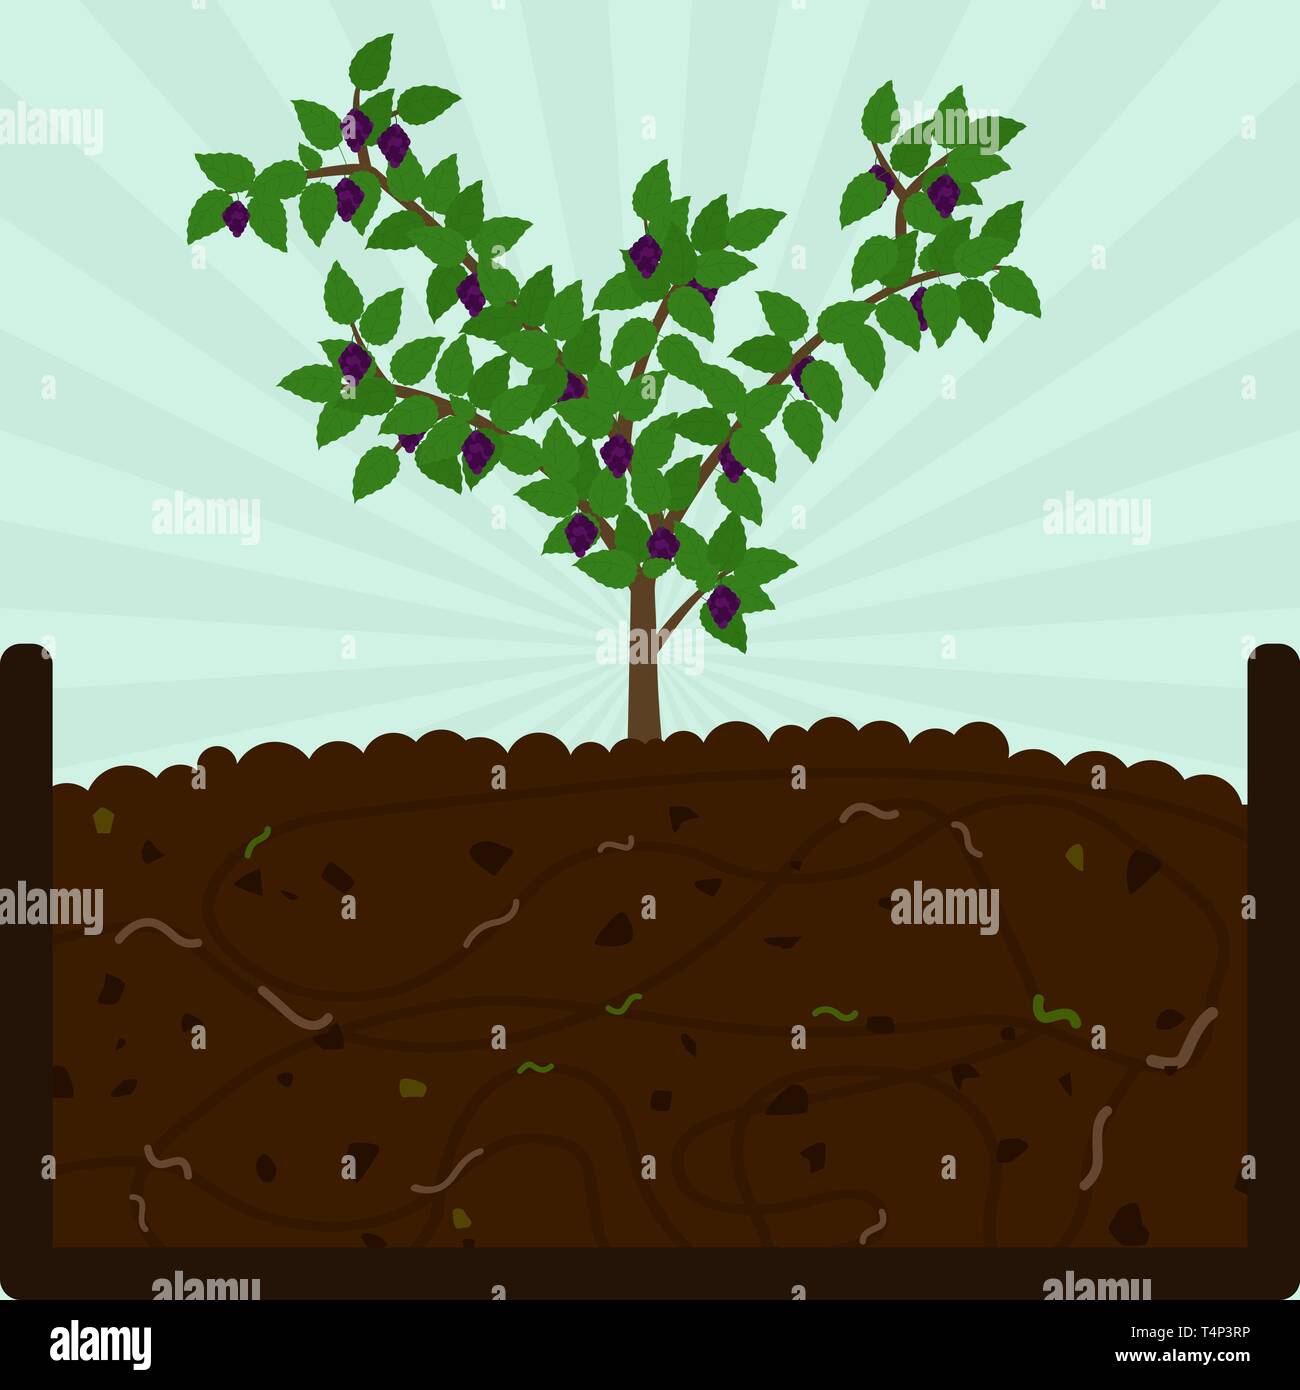 Blackberry Obstbaum pflanzen. Kompostierung mit organischen Stoffen, Mikroorganismen und Regenwürmer. Laub auf dem Boden. Stock Vektor